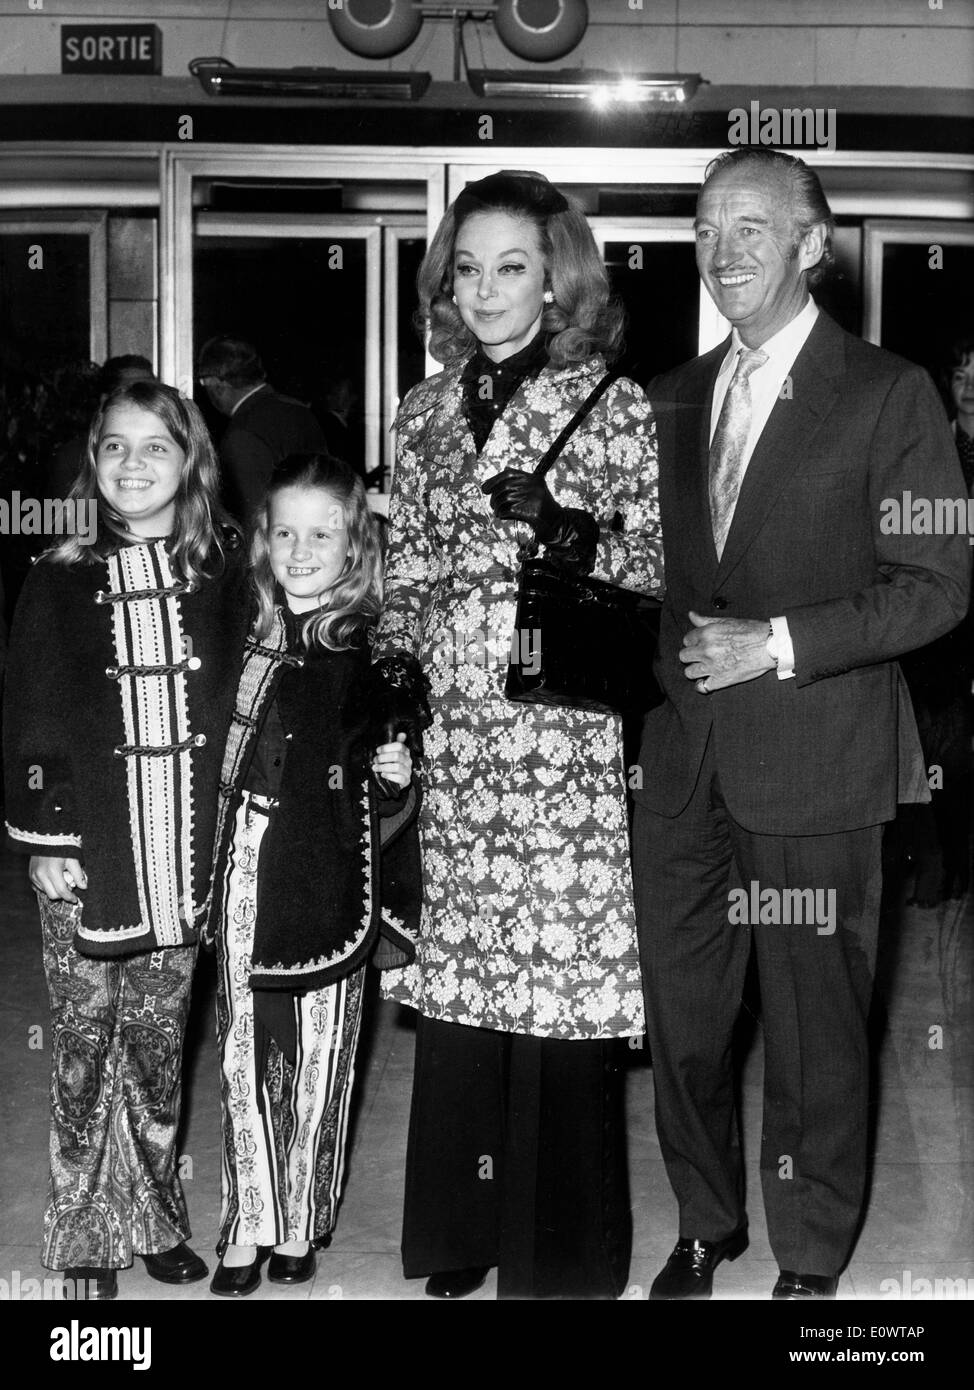 L'acteur David Niven avec sa famille à un film premiere Banque D'Images